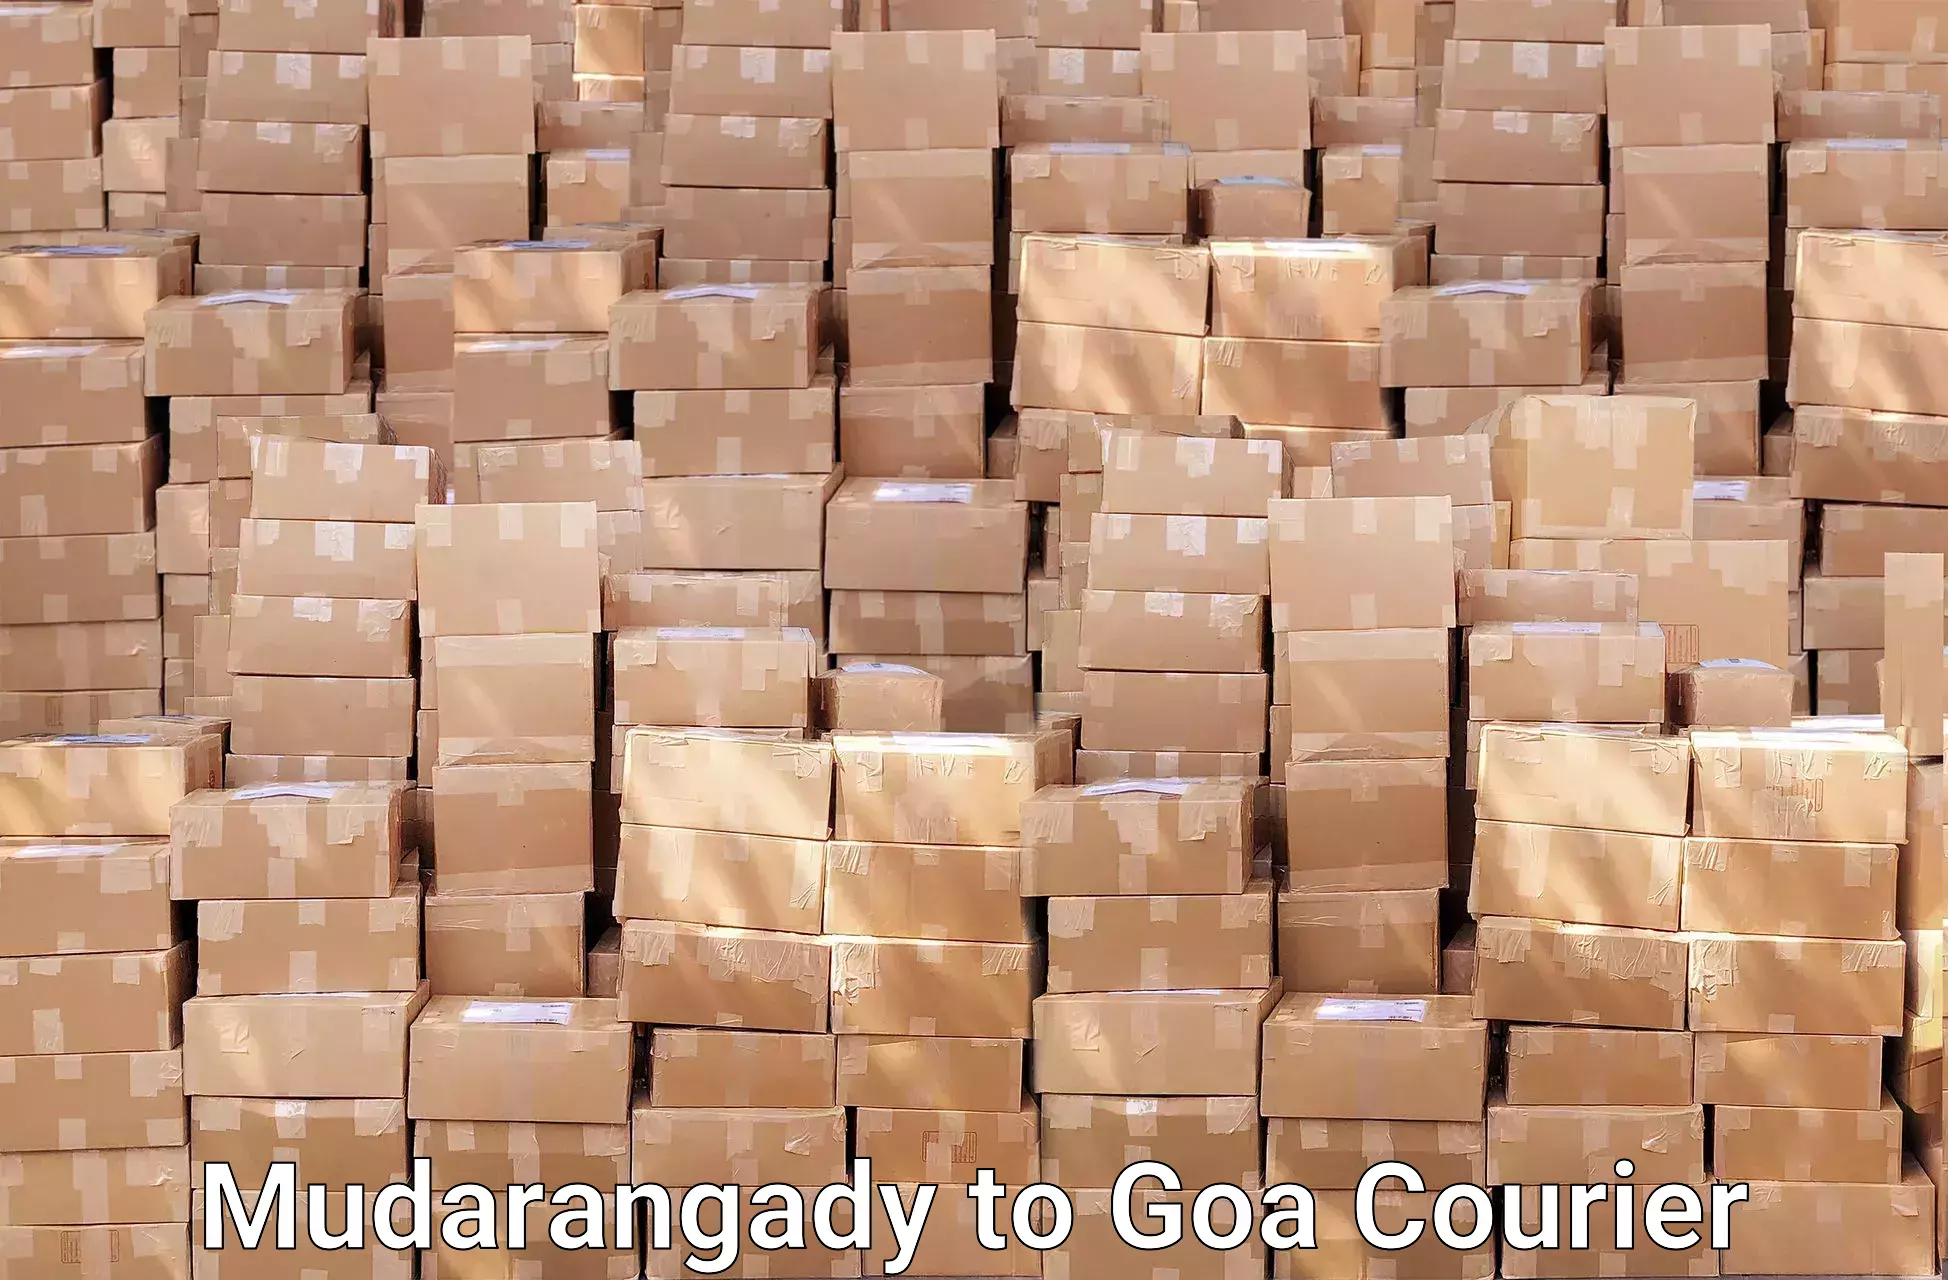 Furniture moving service in Mudarangady to Goa